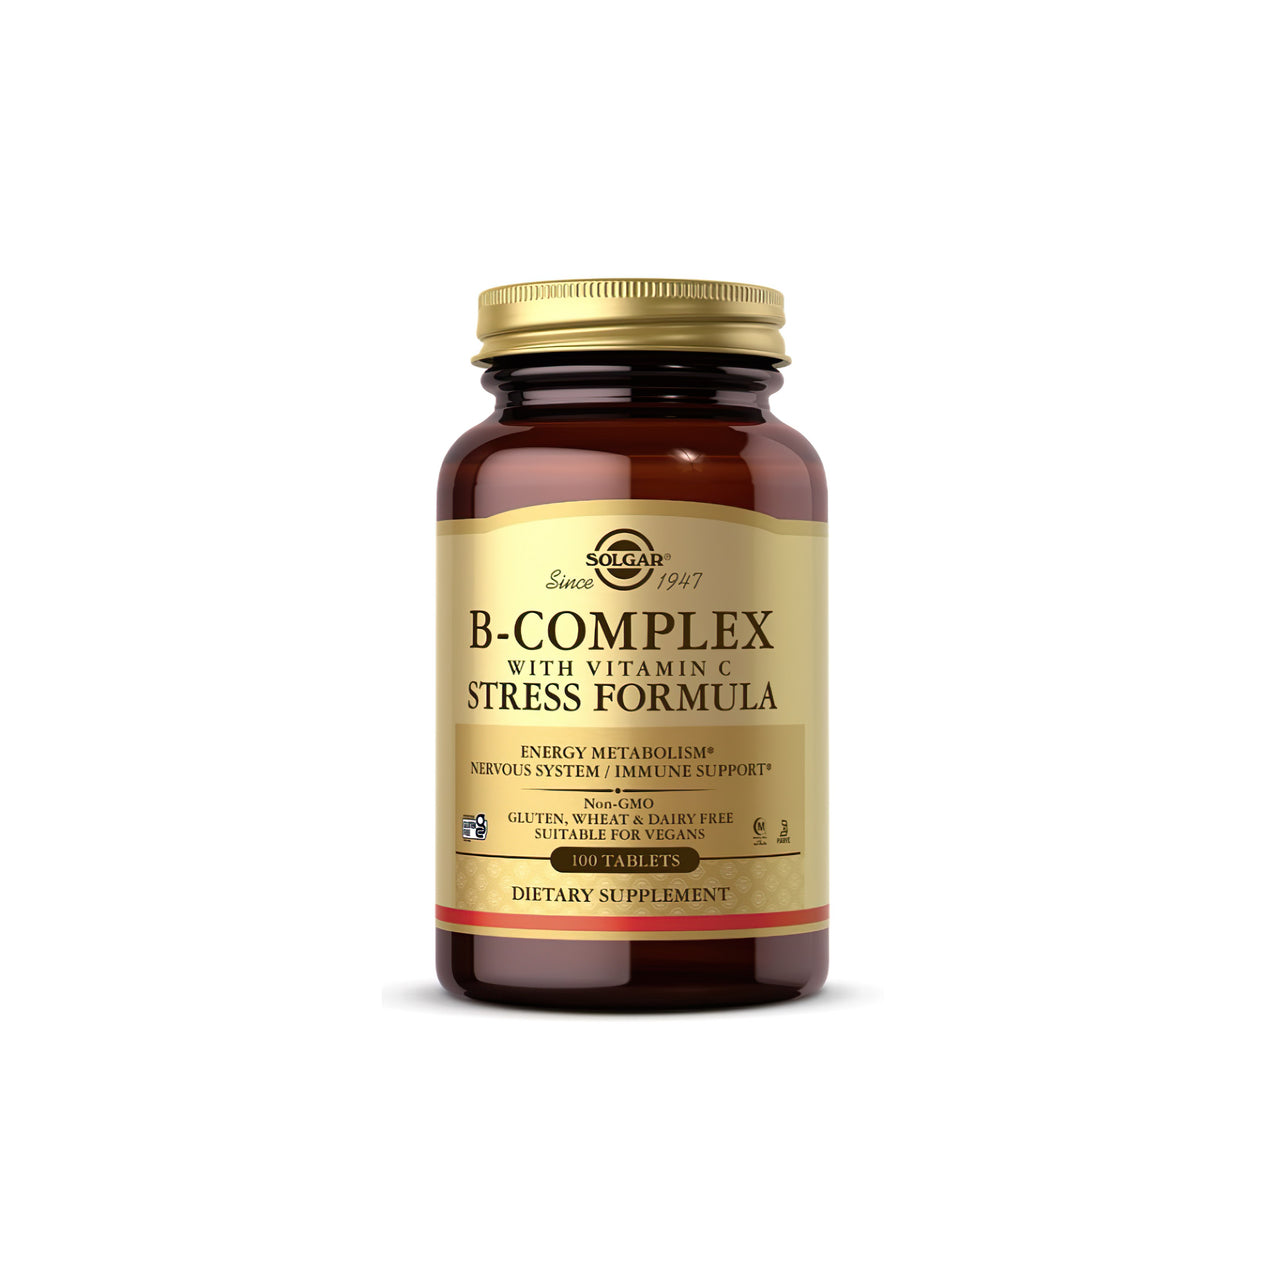 Ein Nahrungsergänzungsmittel - Solgar B-Komplex mit Vitamin C 100 Tabletten.